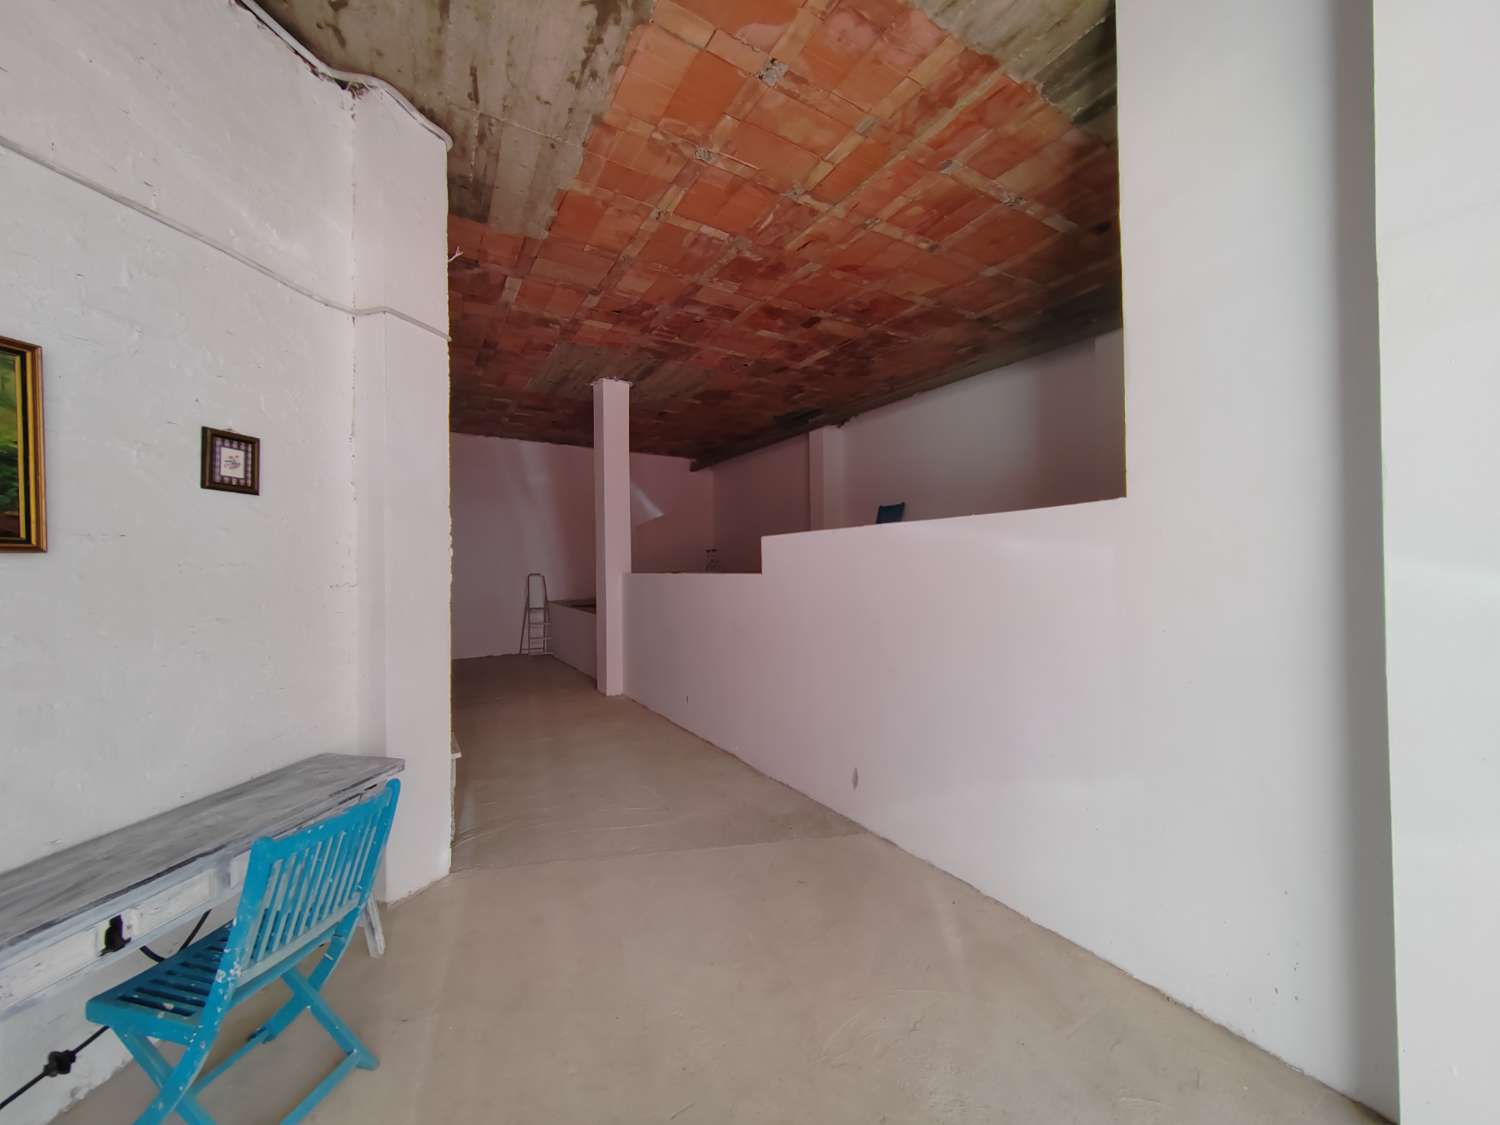 Local-Garage for sale in Veléz-Málaga